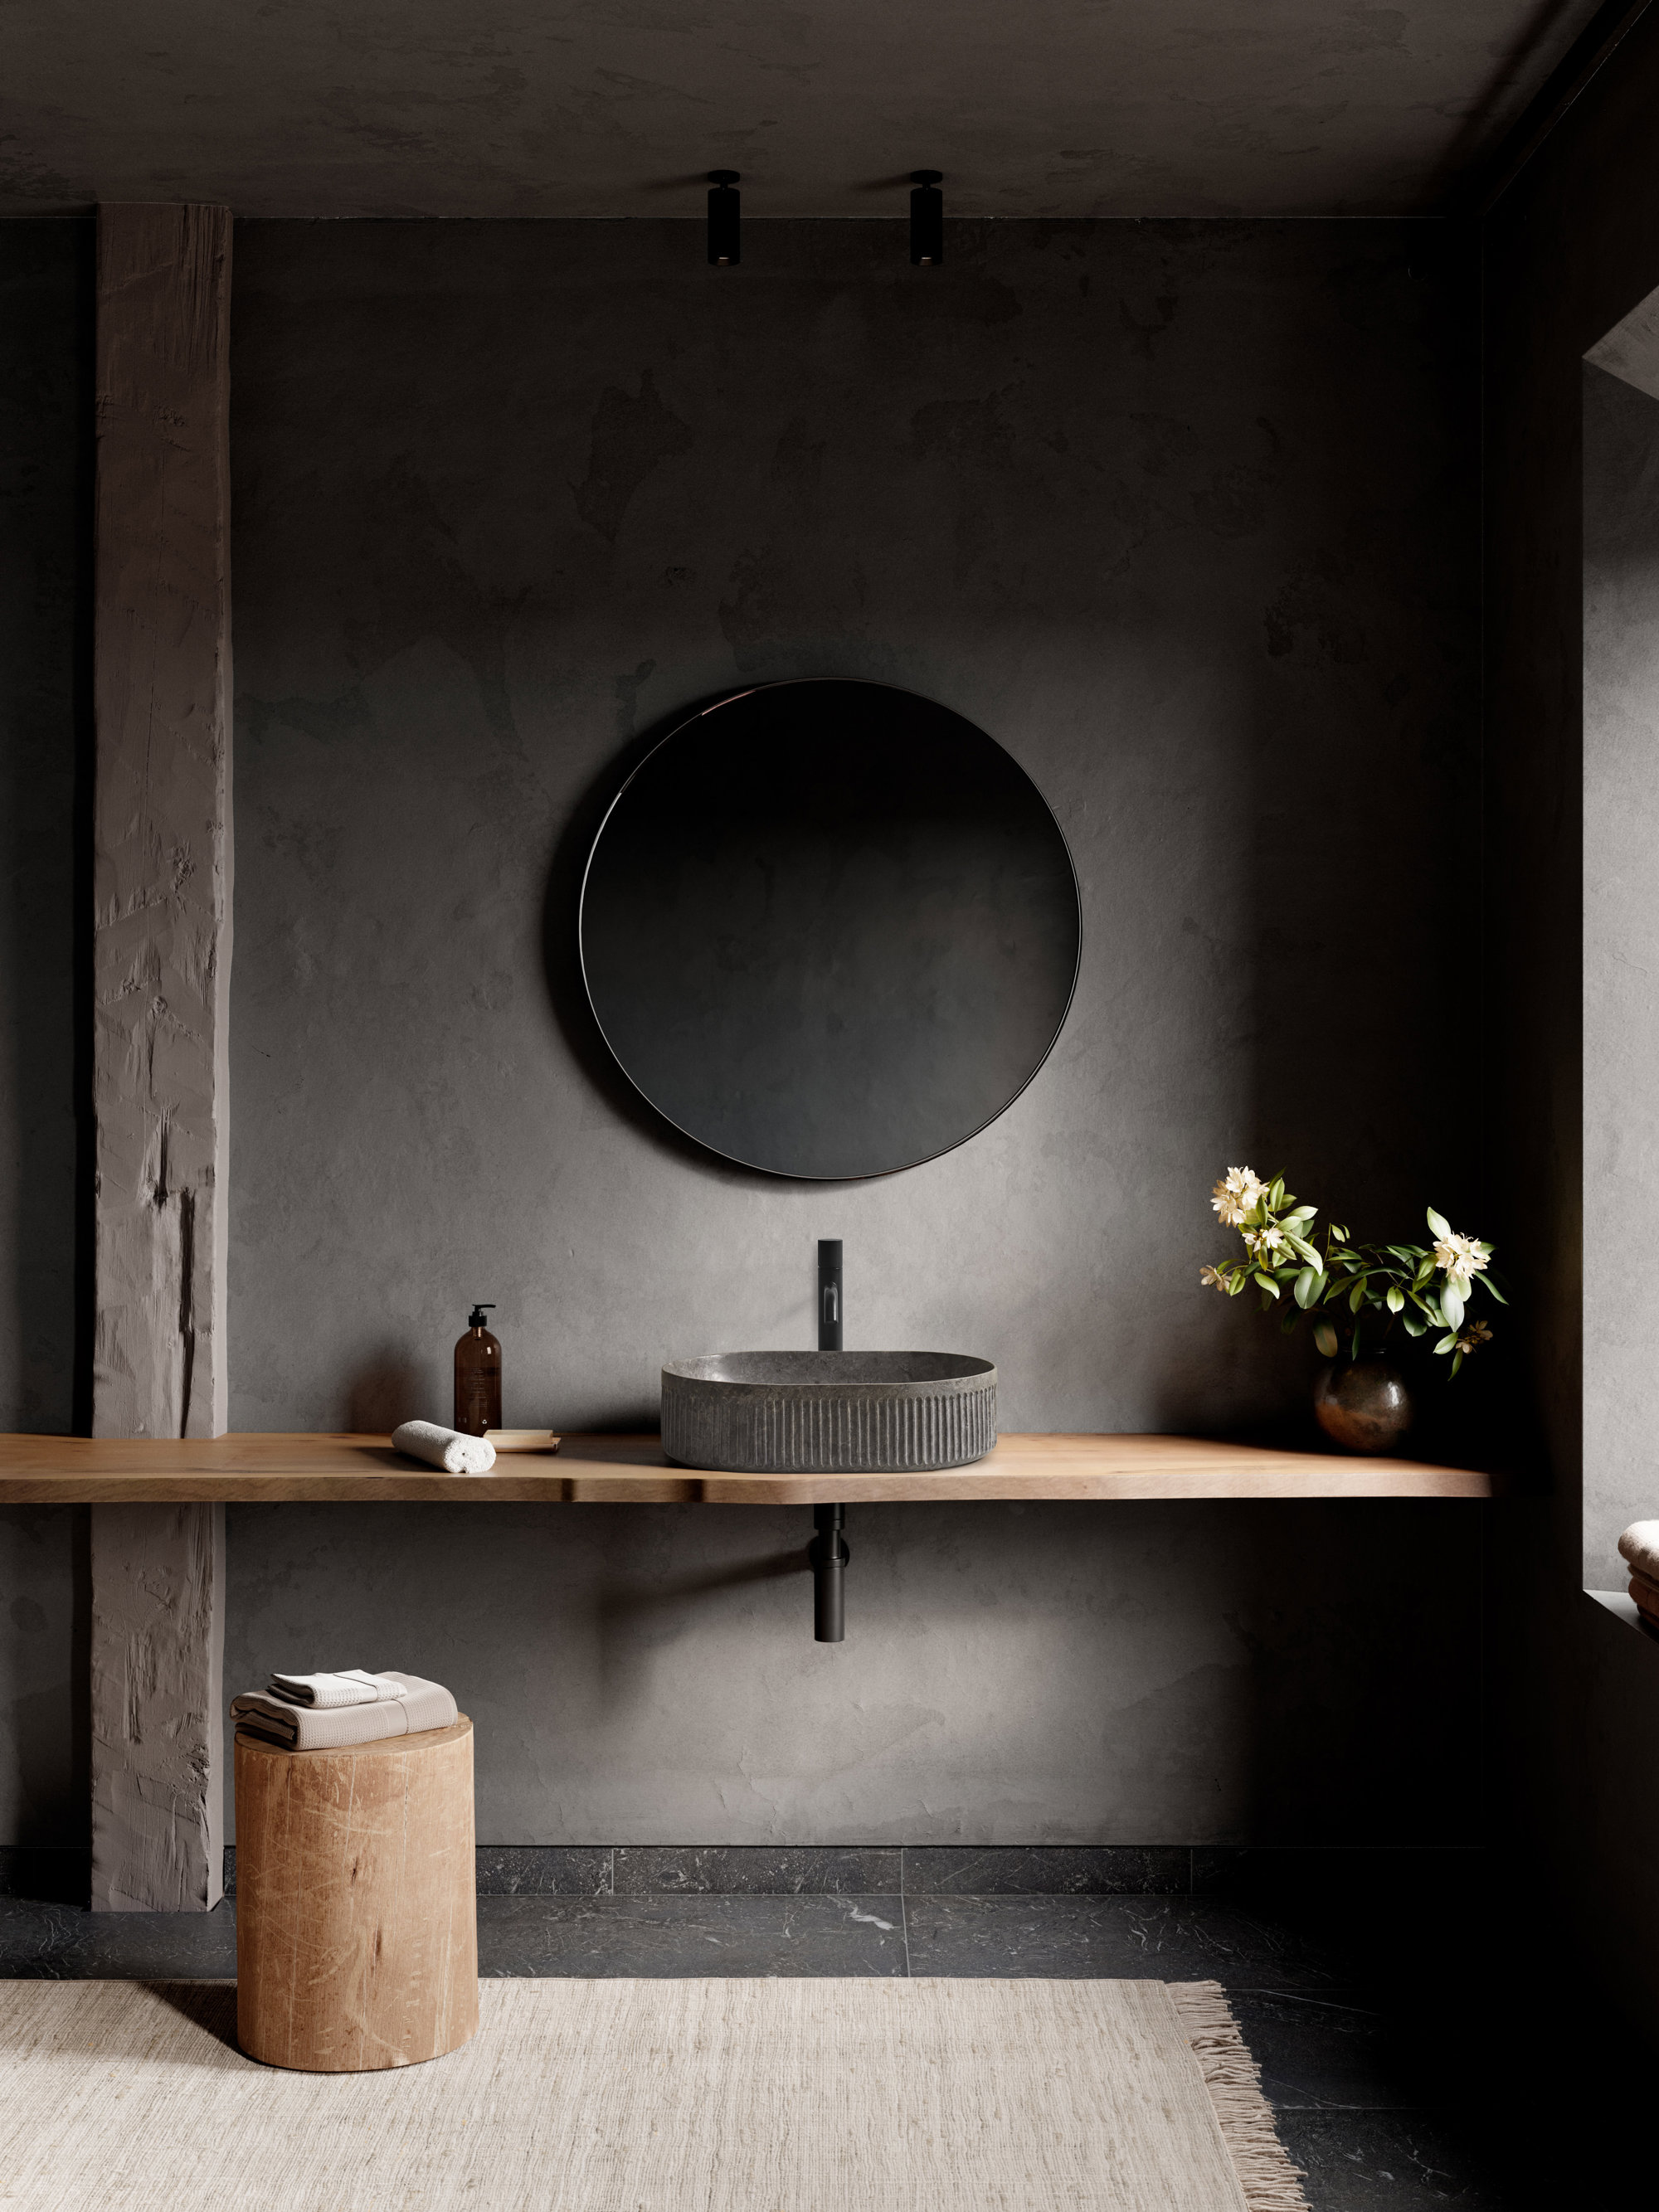 Un baño moderno en tonos oscuros con encimera de madera. 